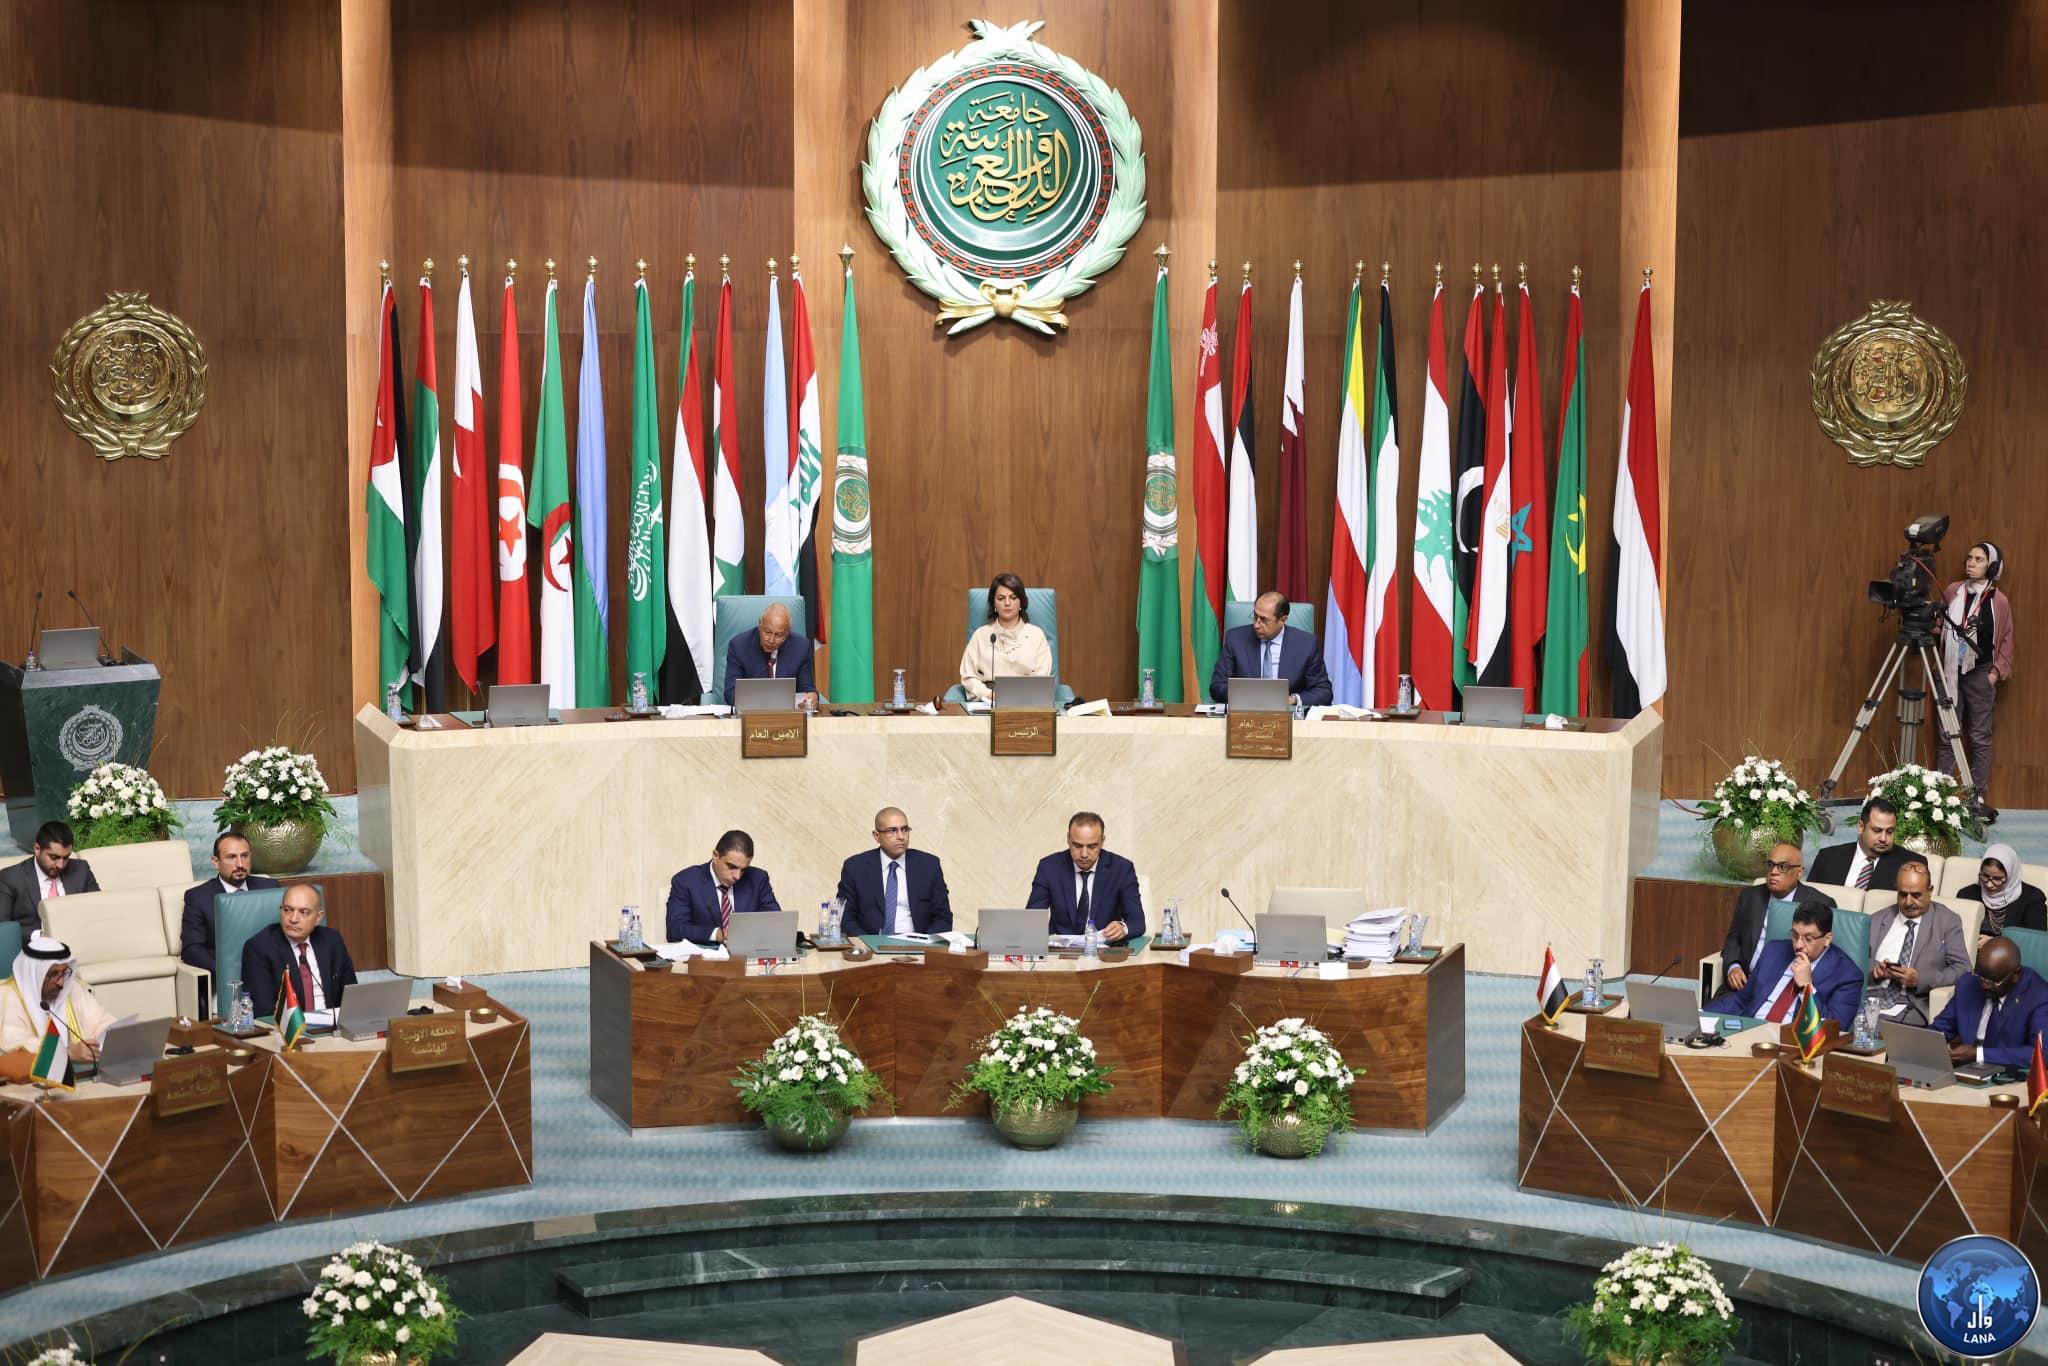 Lors de son discours d'ouverture du Conseil de la Ligue arabe, Mme. al-Mangoush : « avec la volonté nationale et le soutien des frères arabes, nous pourrons organiser des élections nationales ».